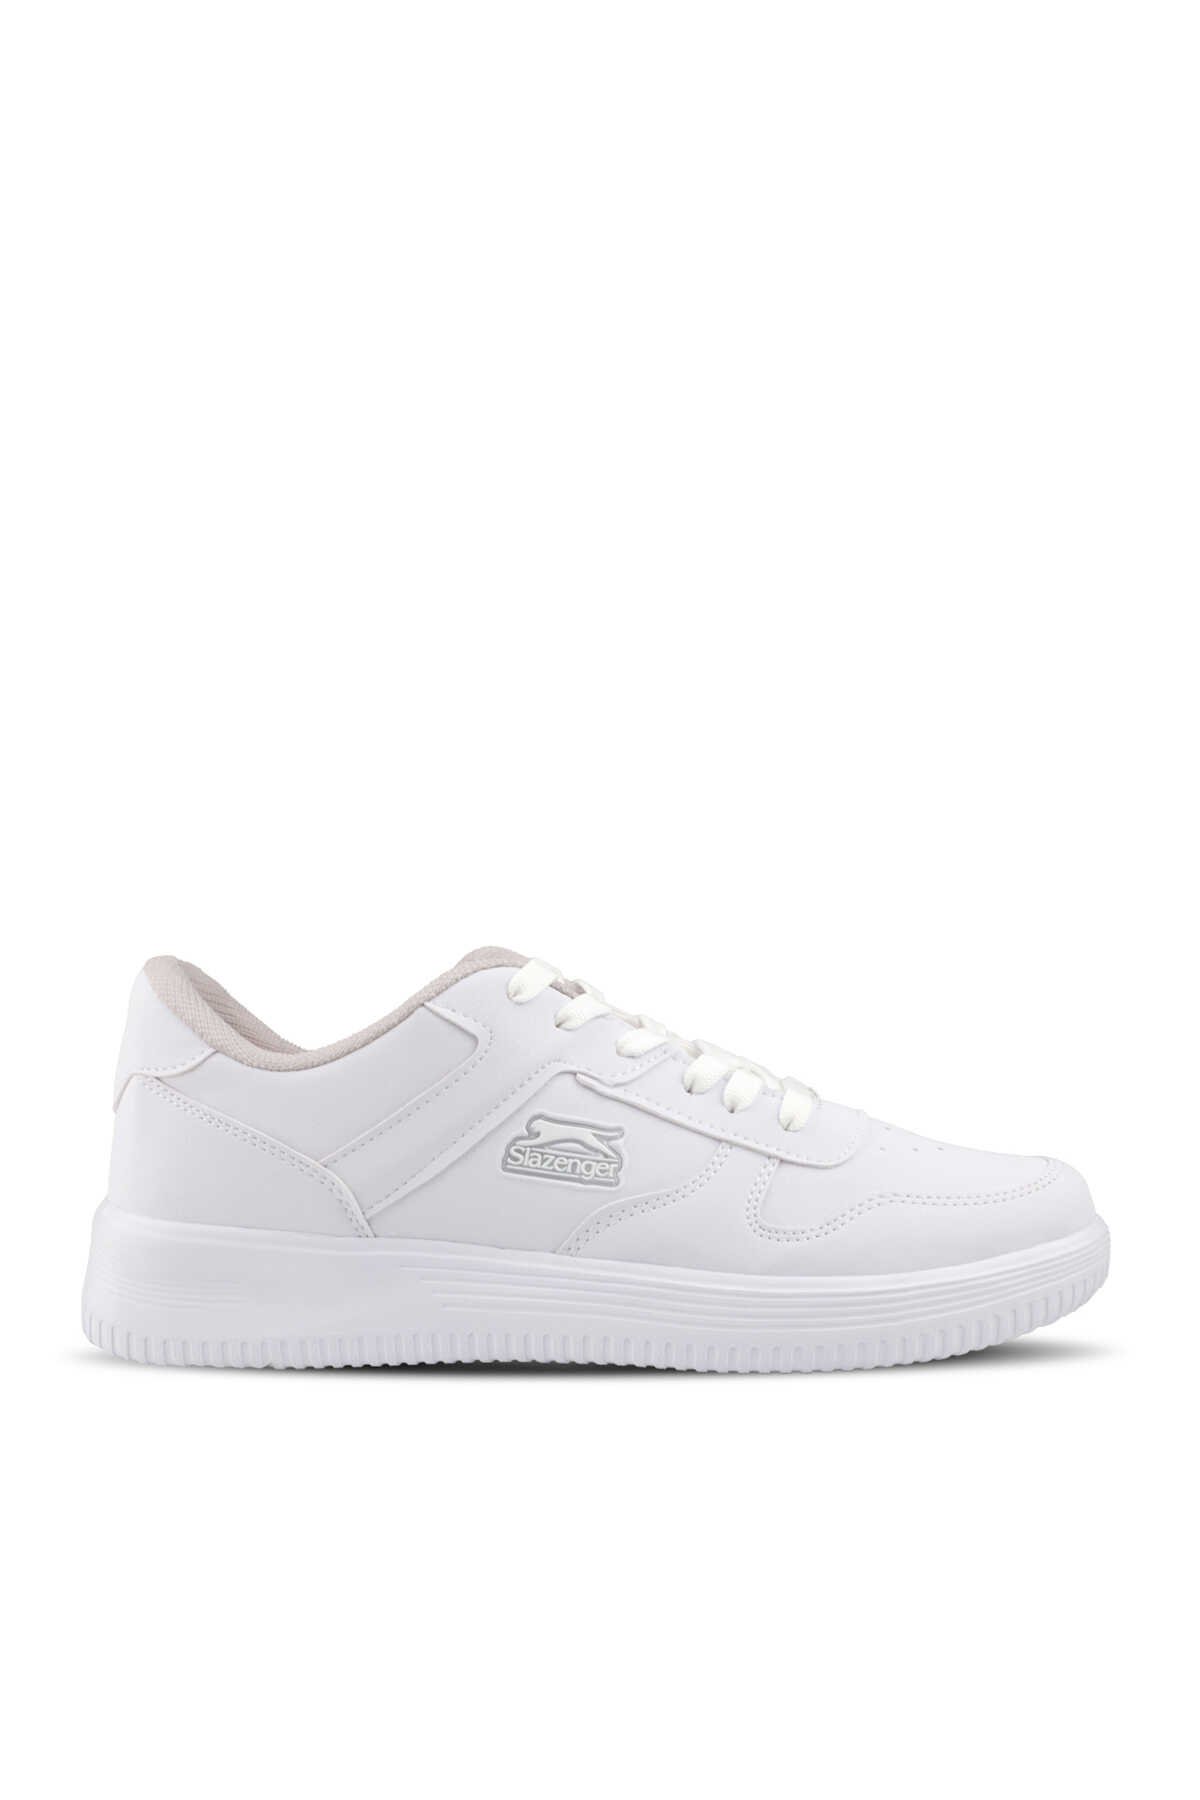 Slazenger - Slazenger ELIORA I Sneaker Kadın Ayakkabı Beyaz